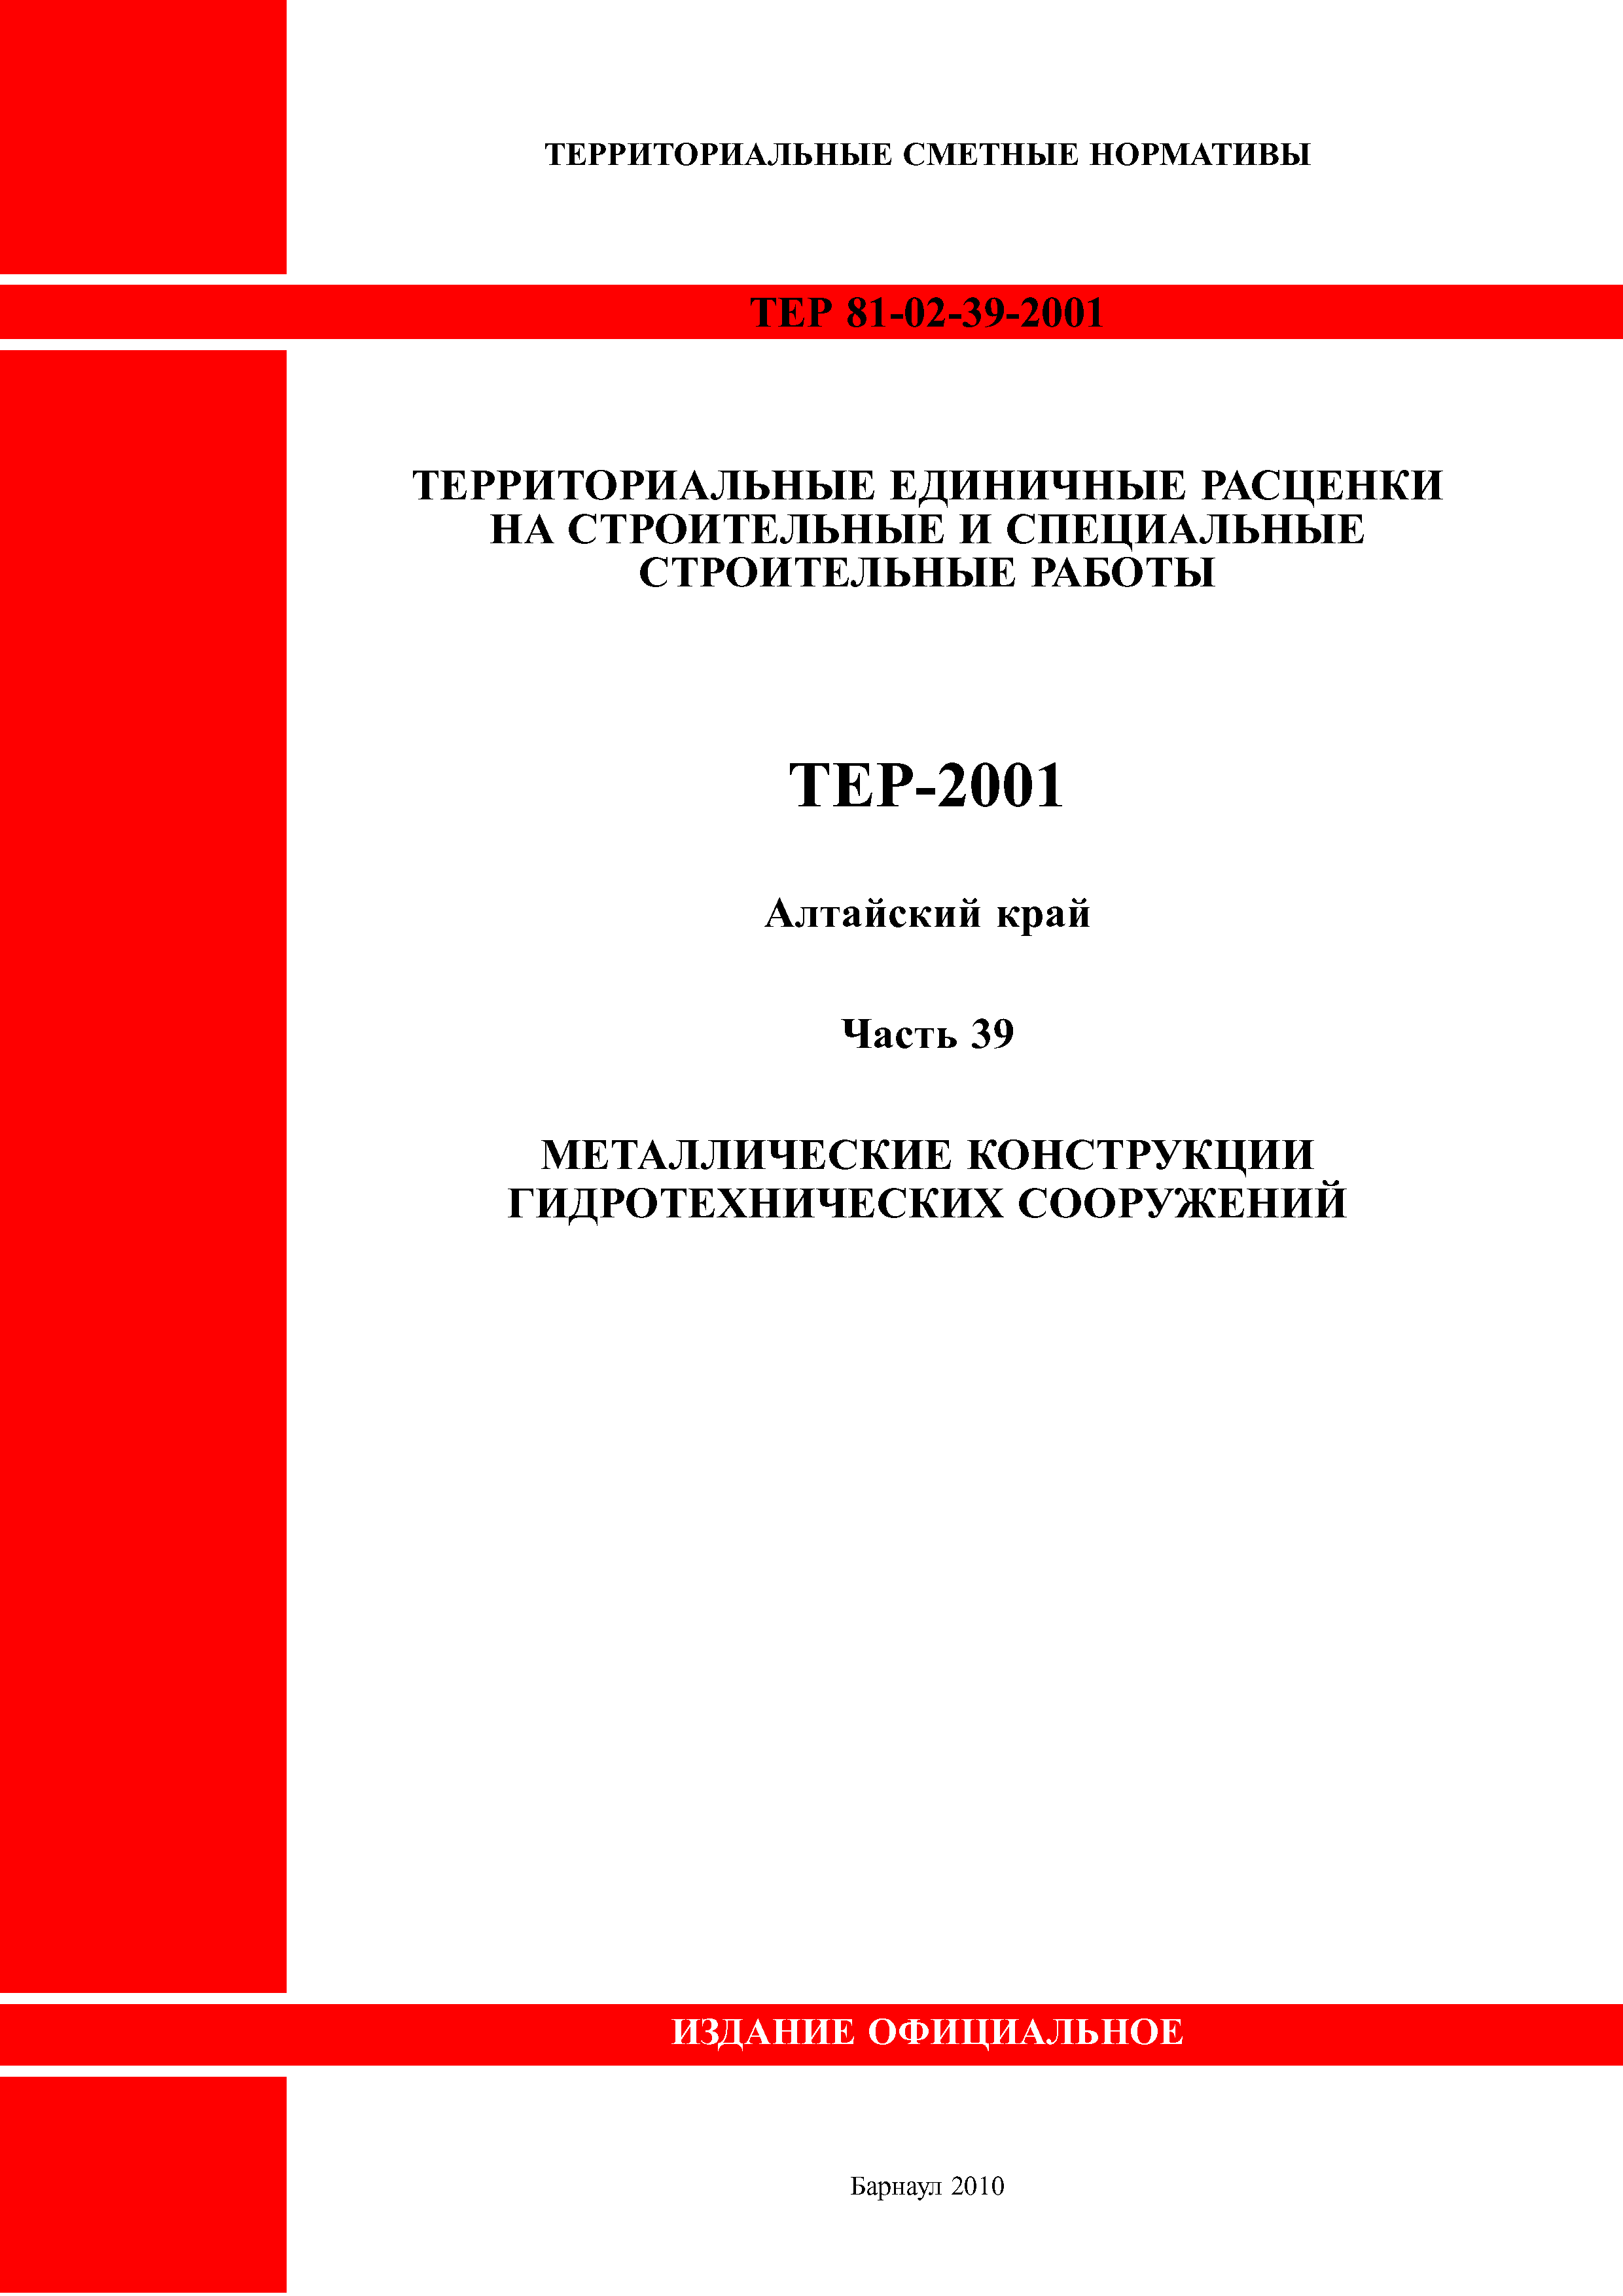 ТЕР Алтайский край 2001-39